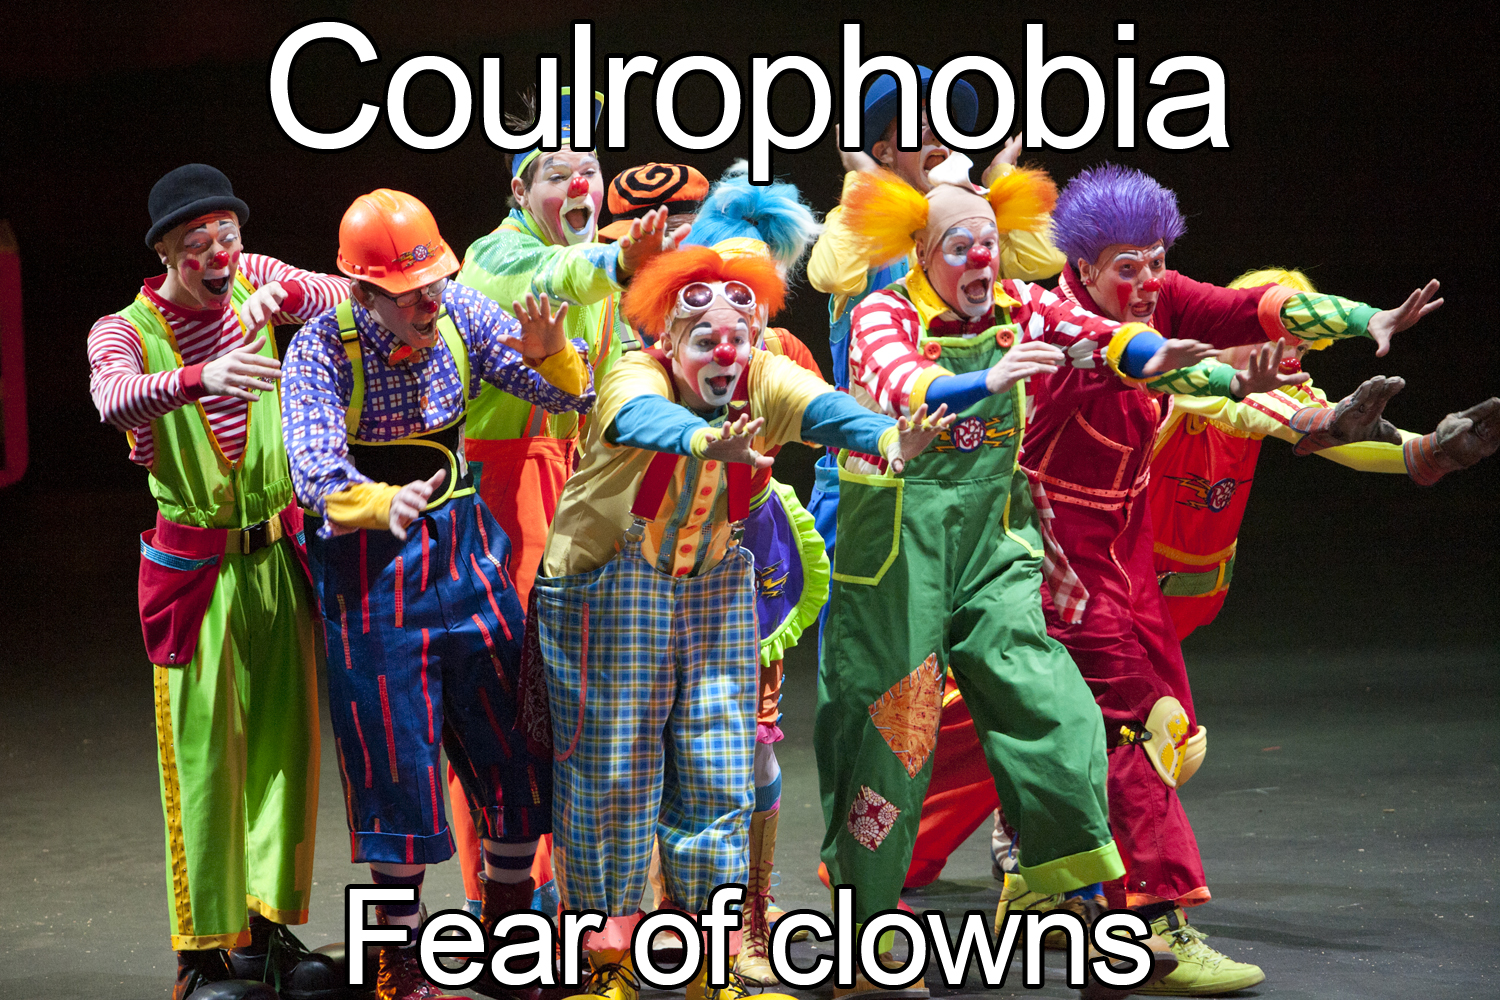 Facing Your Phobias